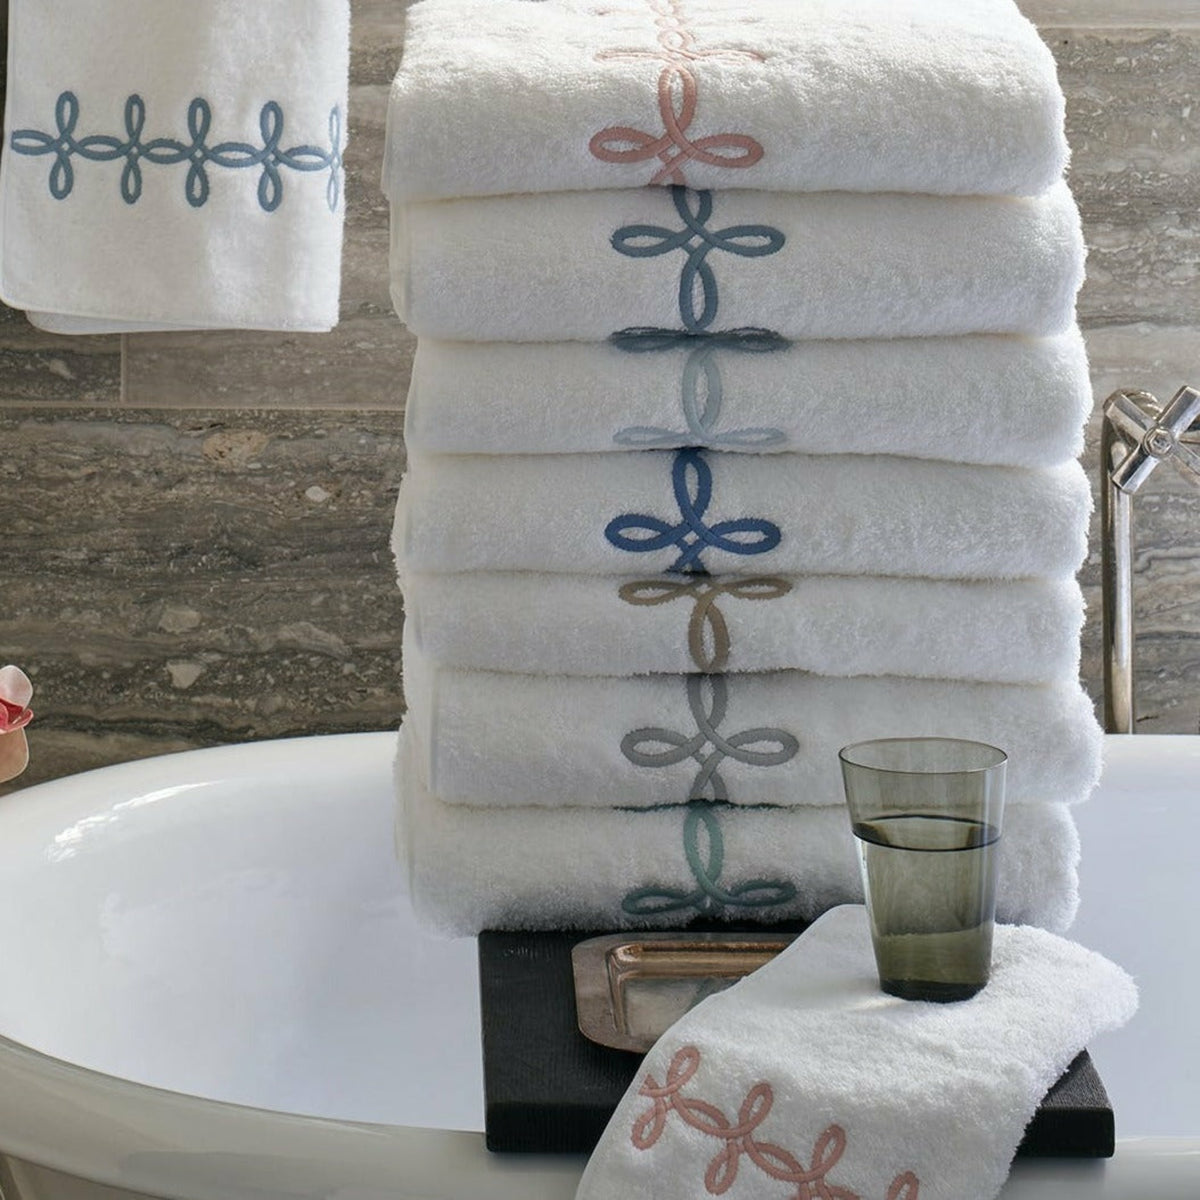 Matouk Gordian Knot Bath Towels Compilation Fine Linens